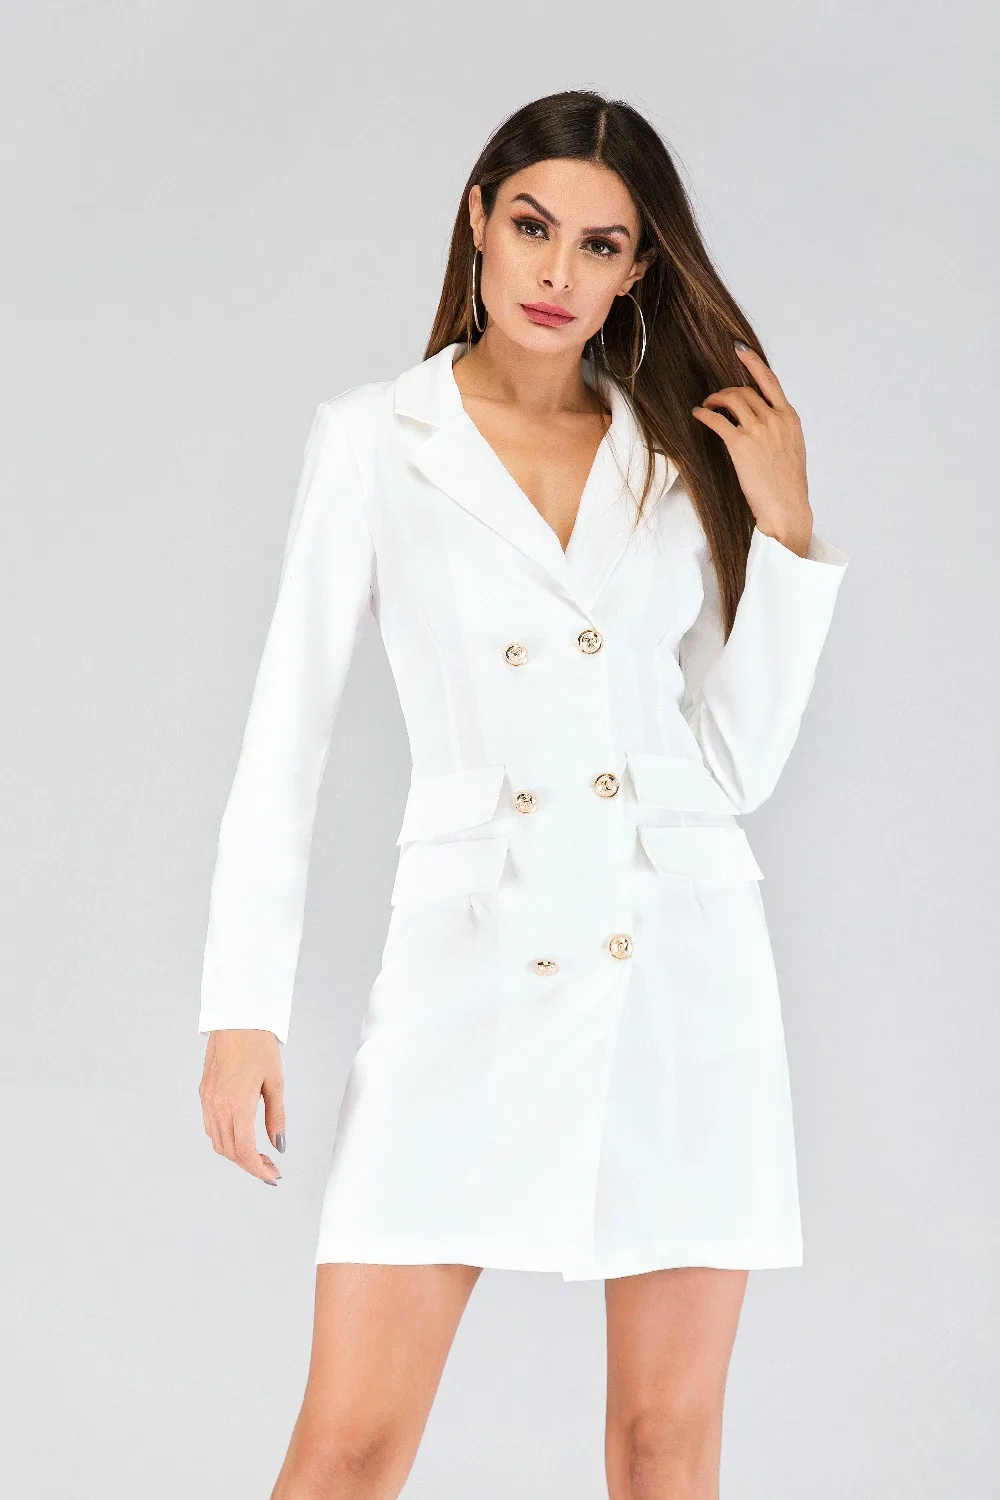 Двубортный однотонный пиджак с v-образным вырезом тонкий жакет Женский Осенний длинный формальный пиджак с длинным рукавом платье для офисных леди